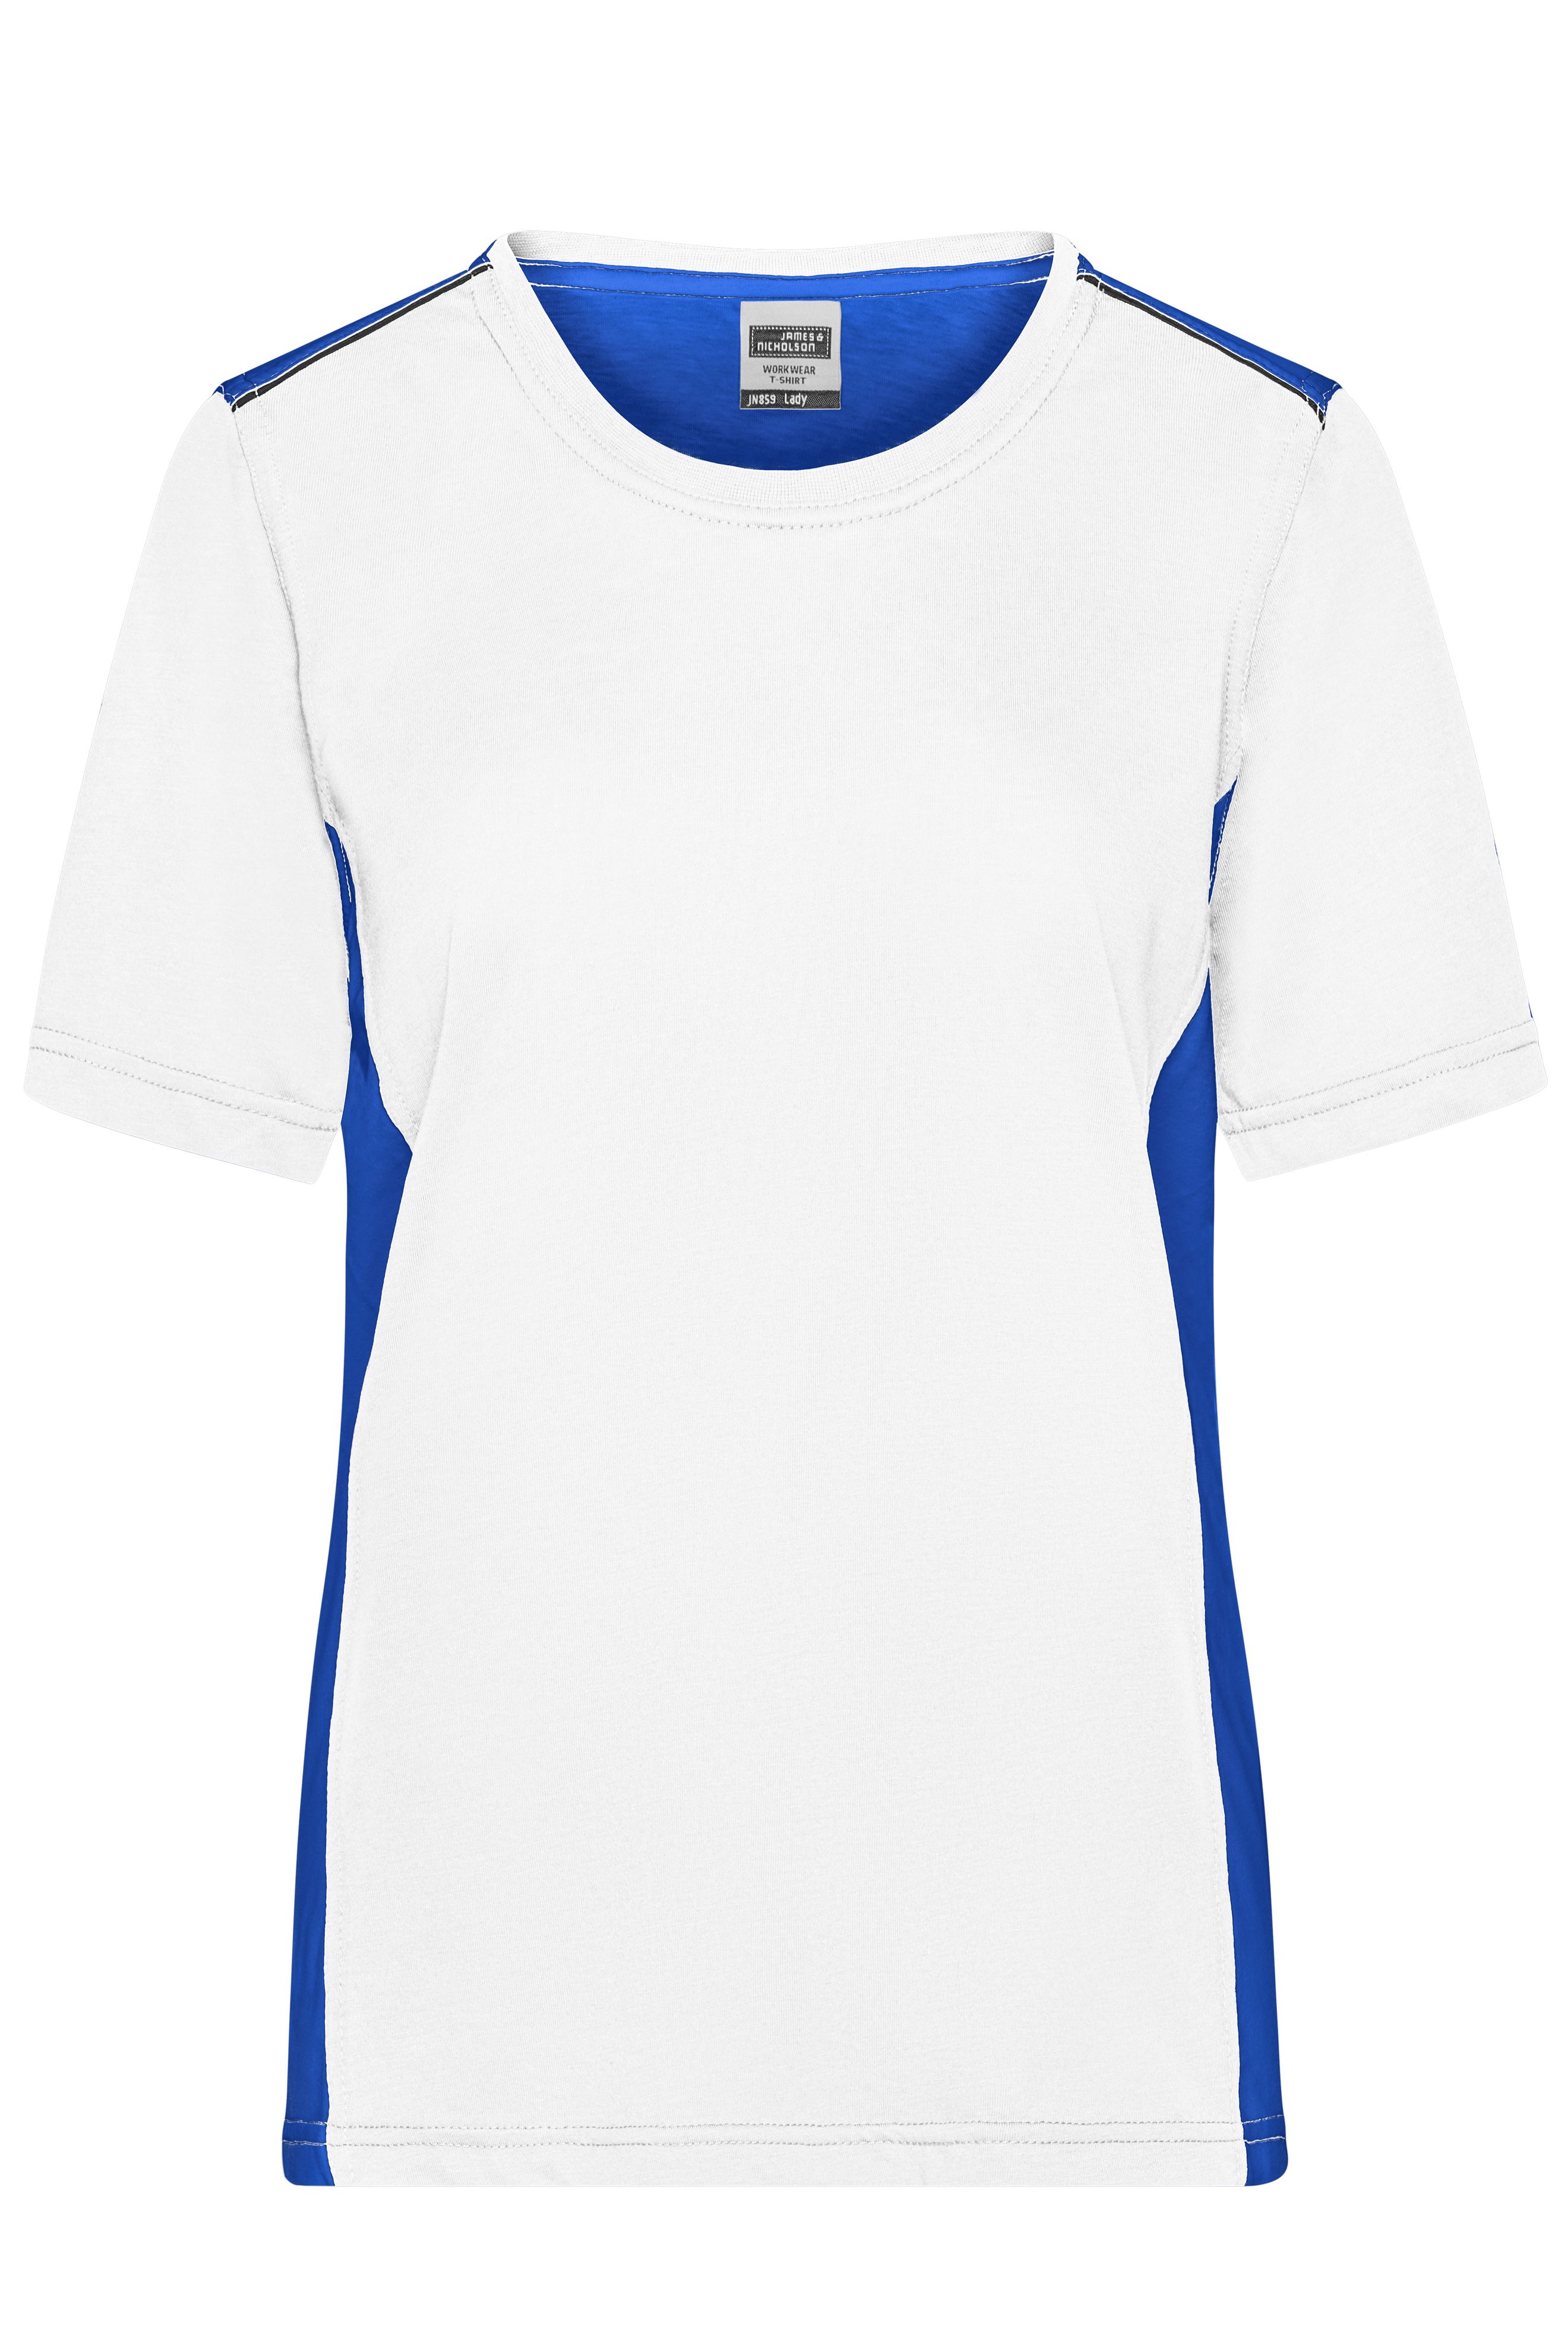 Ladies' Workwear T-Shirt - COLOR - JN859 Strapazierfähiges und pflegeleichtes T-Shirt mit Kontrasteinsätzen